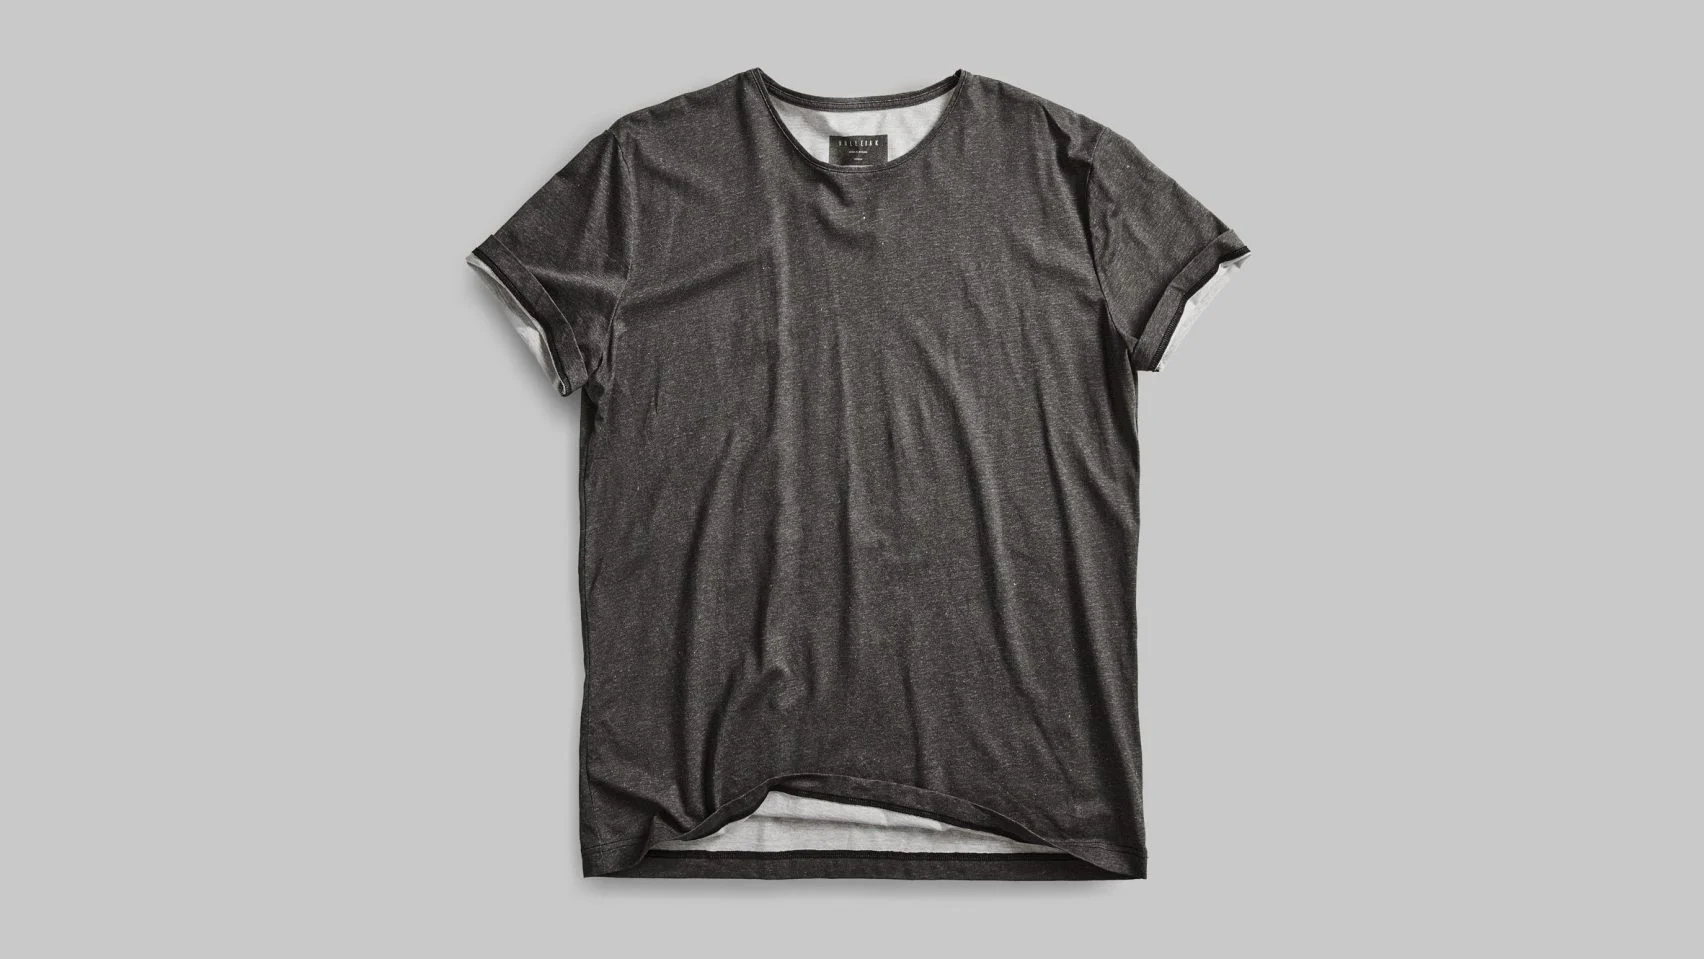 탄소저장 해조잉크로 스크린인쇄한 볼레백 티셔츠